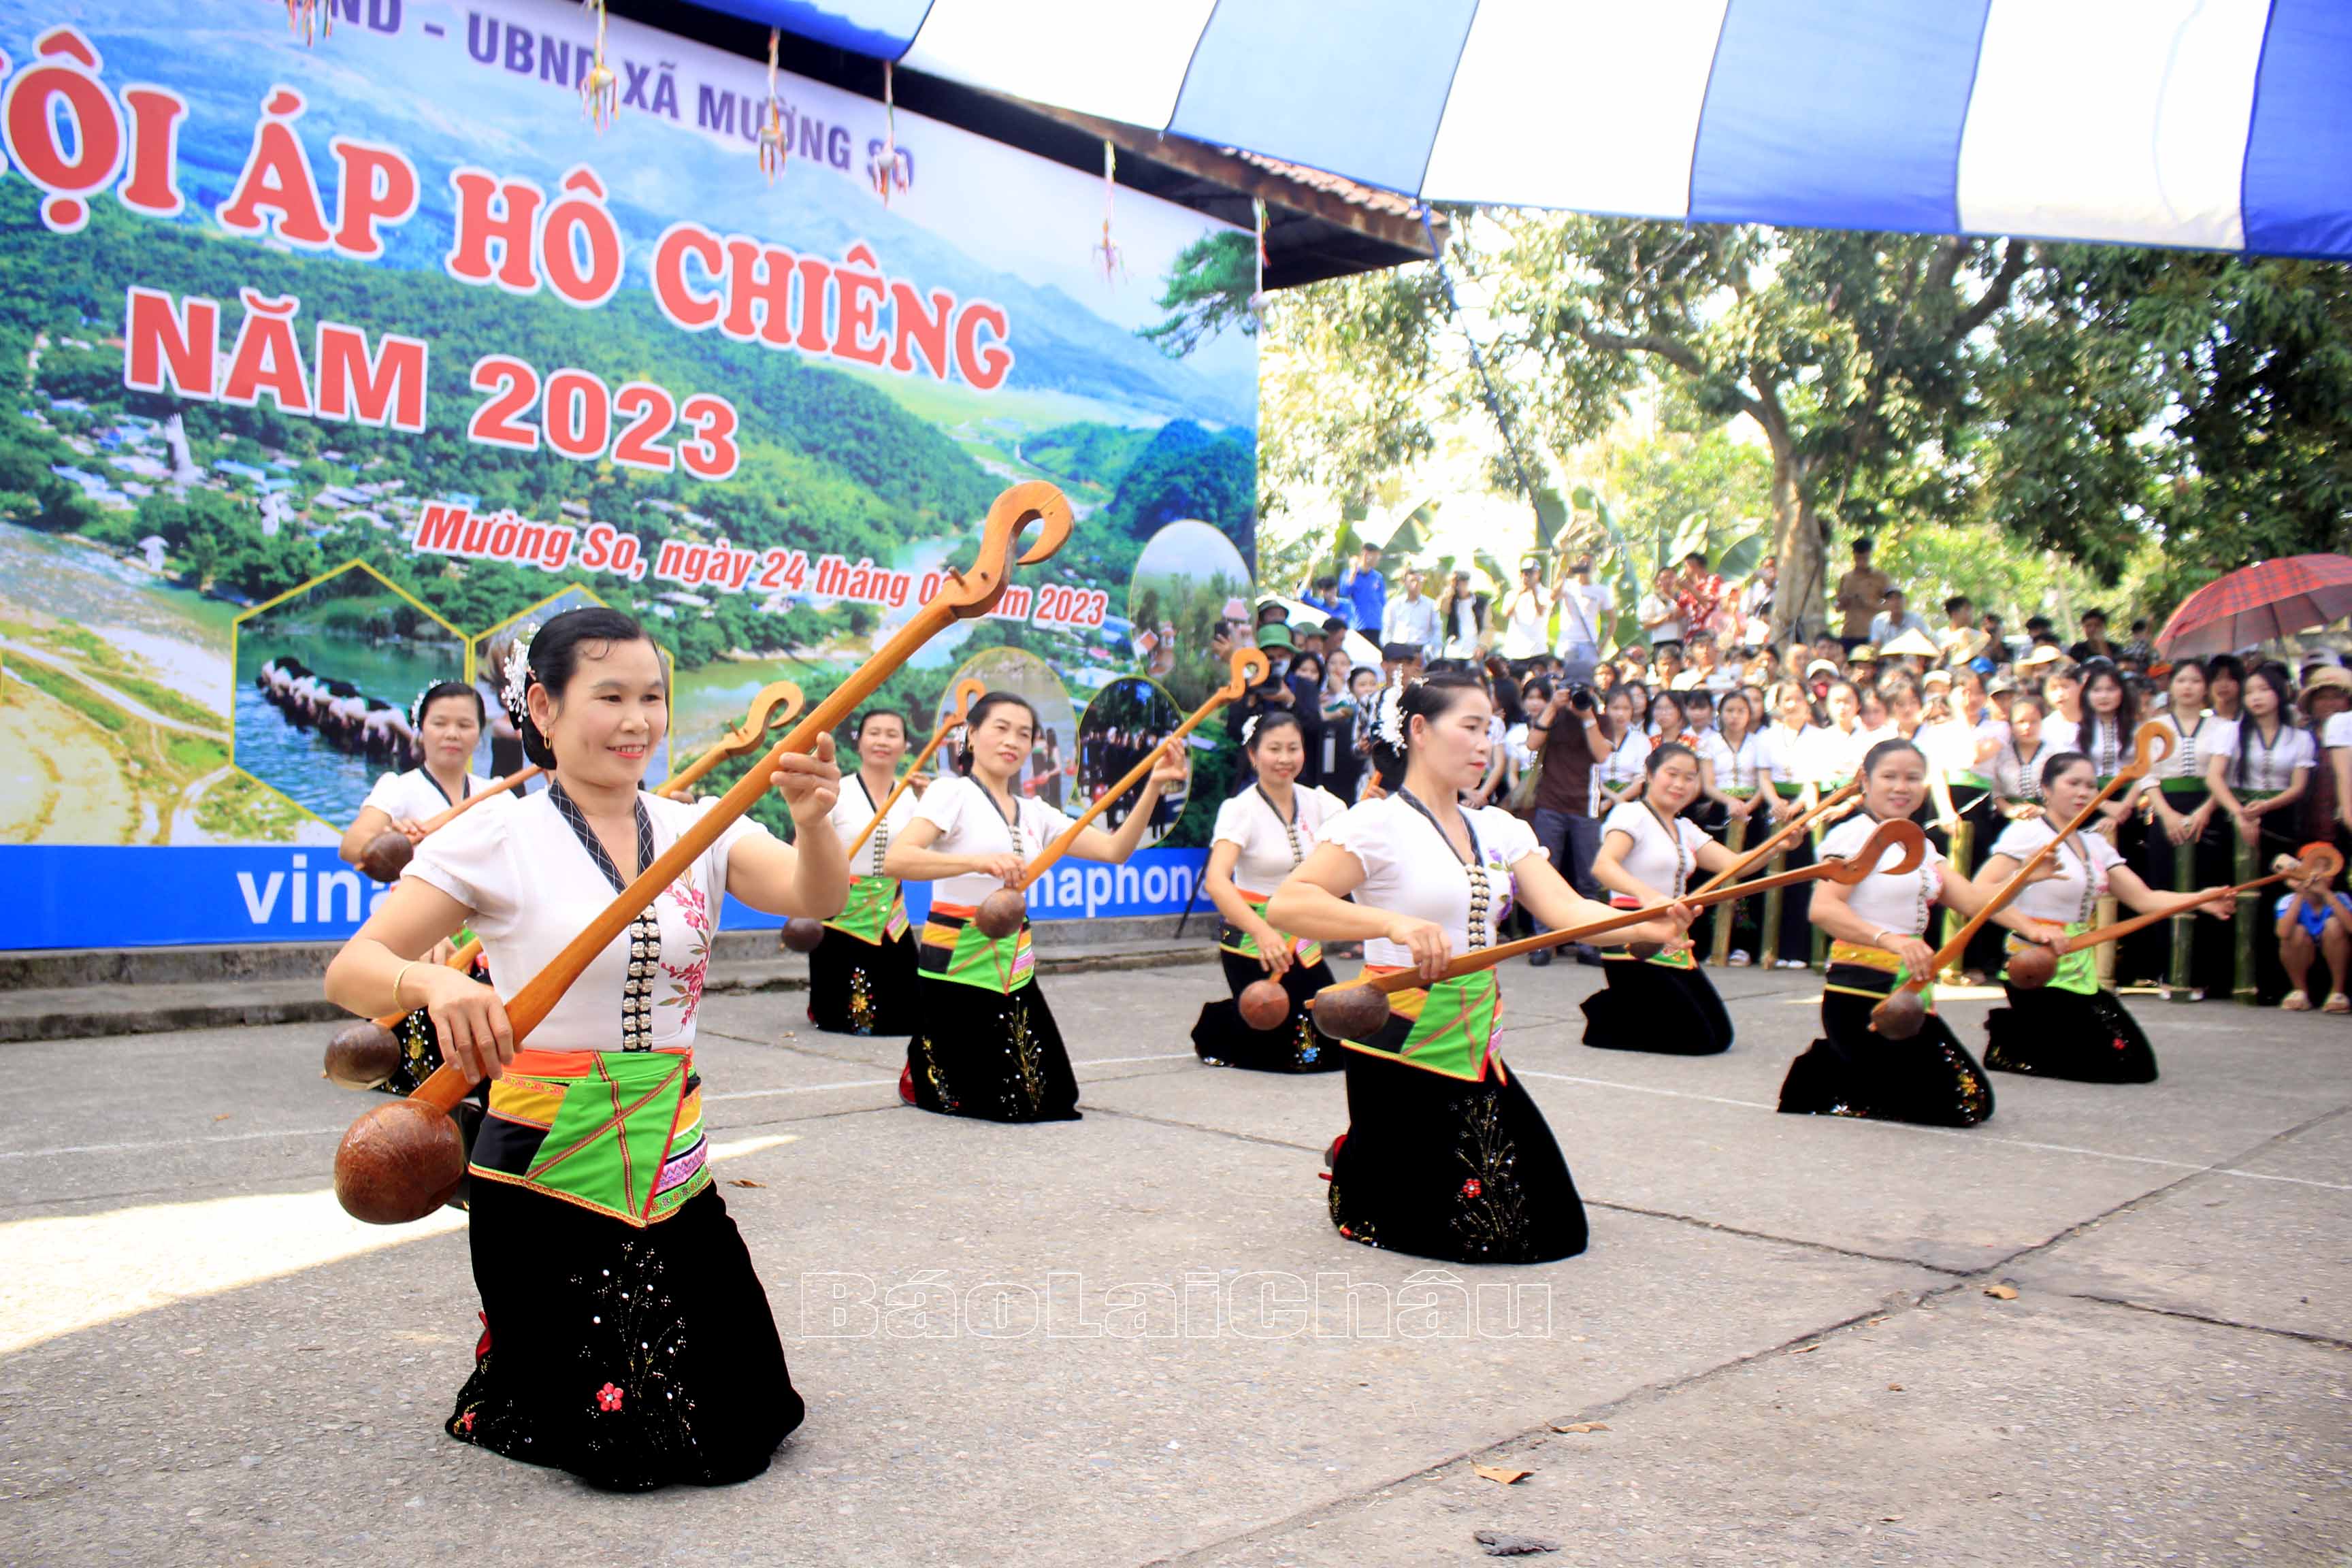 Tiết mục múa đàn của đội văn nghệ bản Vàng Pheo biểu diễn chào mừng đoàn Hoa hậu, Á hậu Việt Nam về dự lễ hội Áp hô Chiêng. 